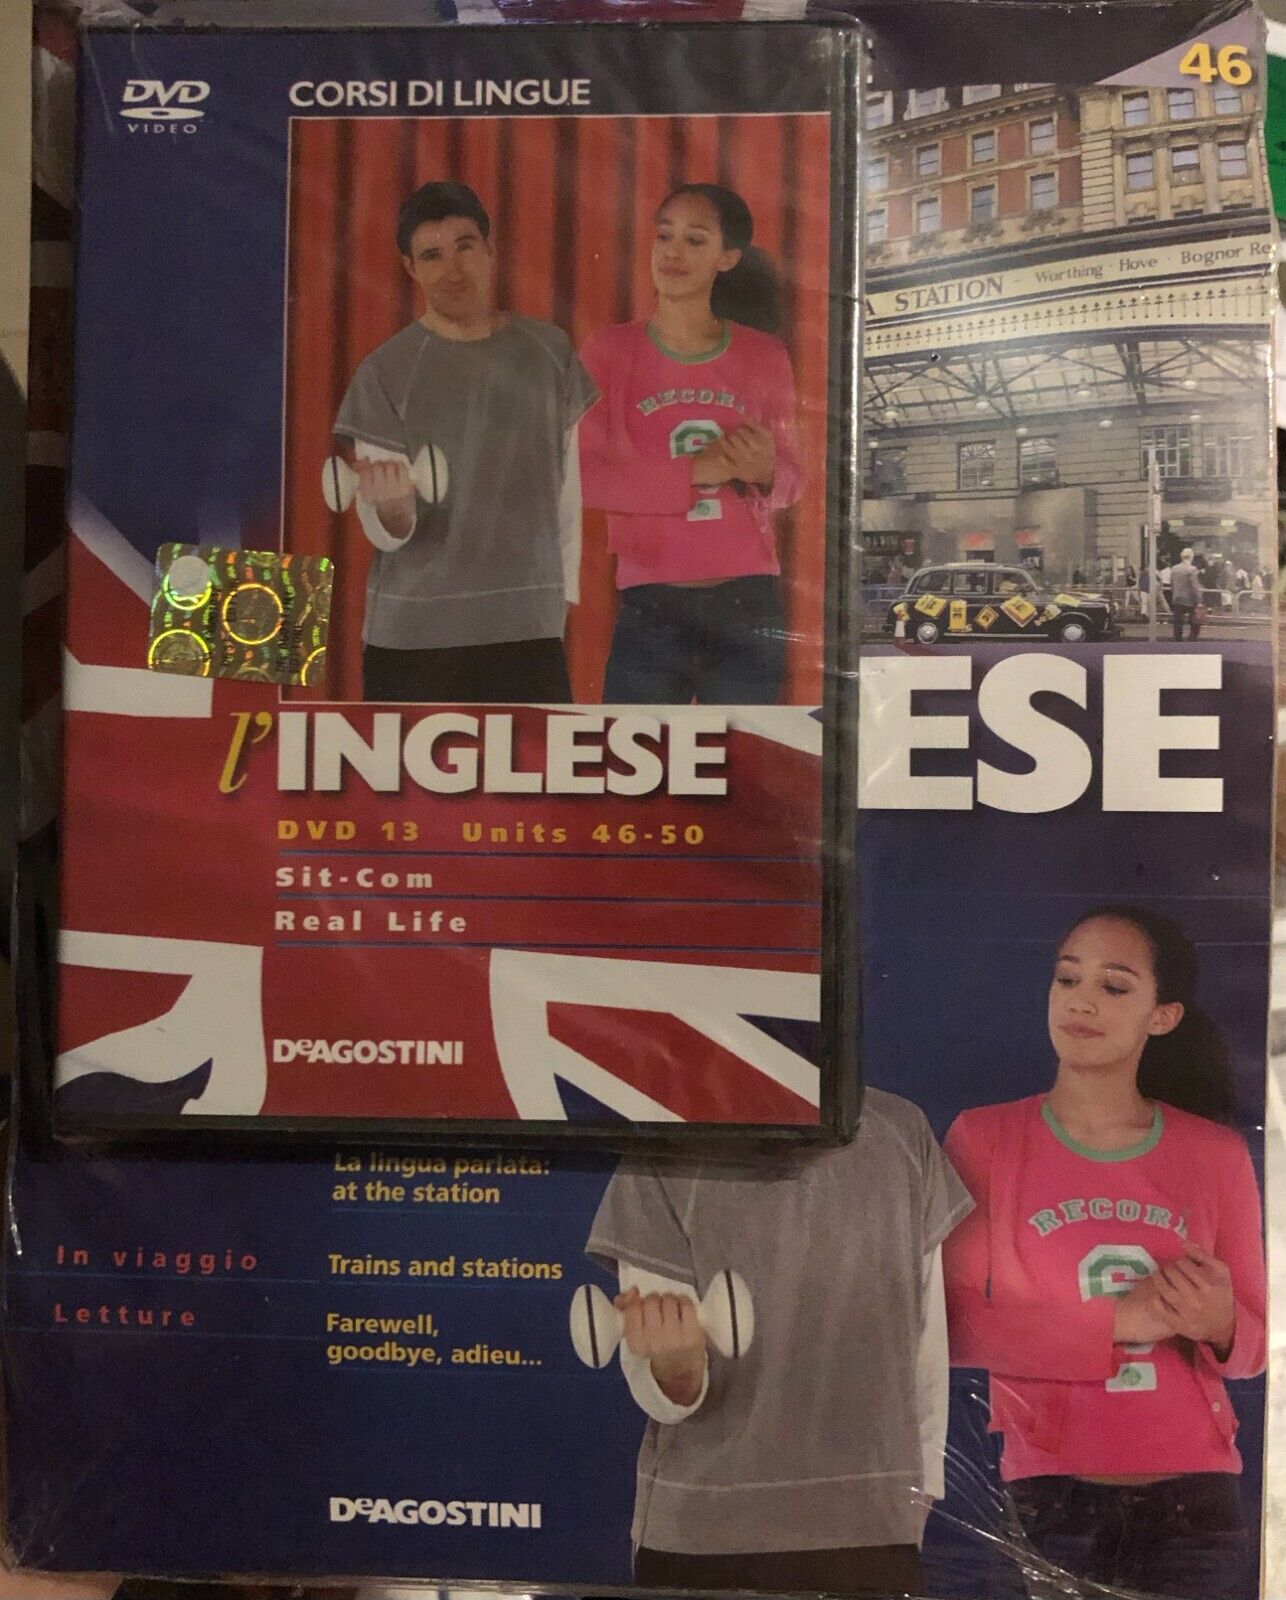 Corsi di lingue L'inglese fascicolo 46+DVD di Aa.vv.,  2008,  Deagostini